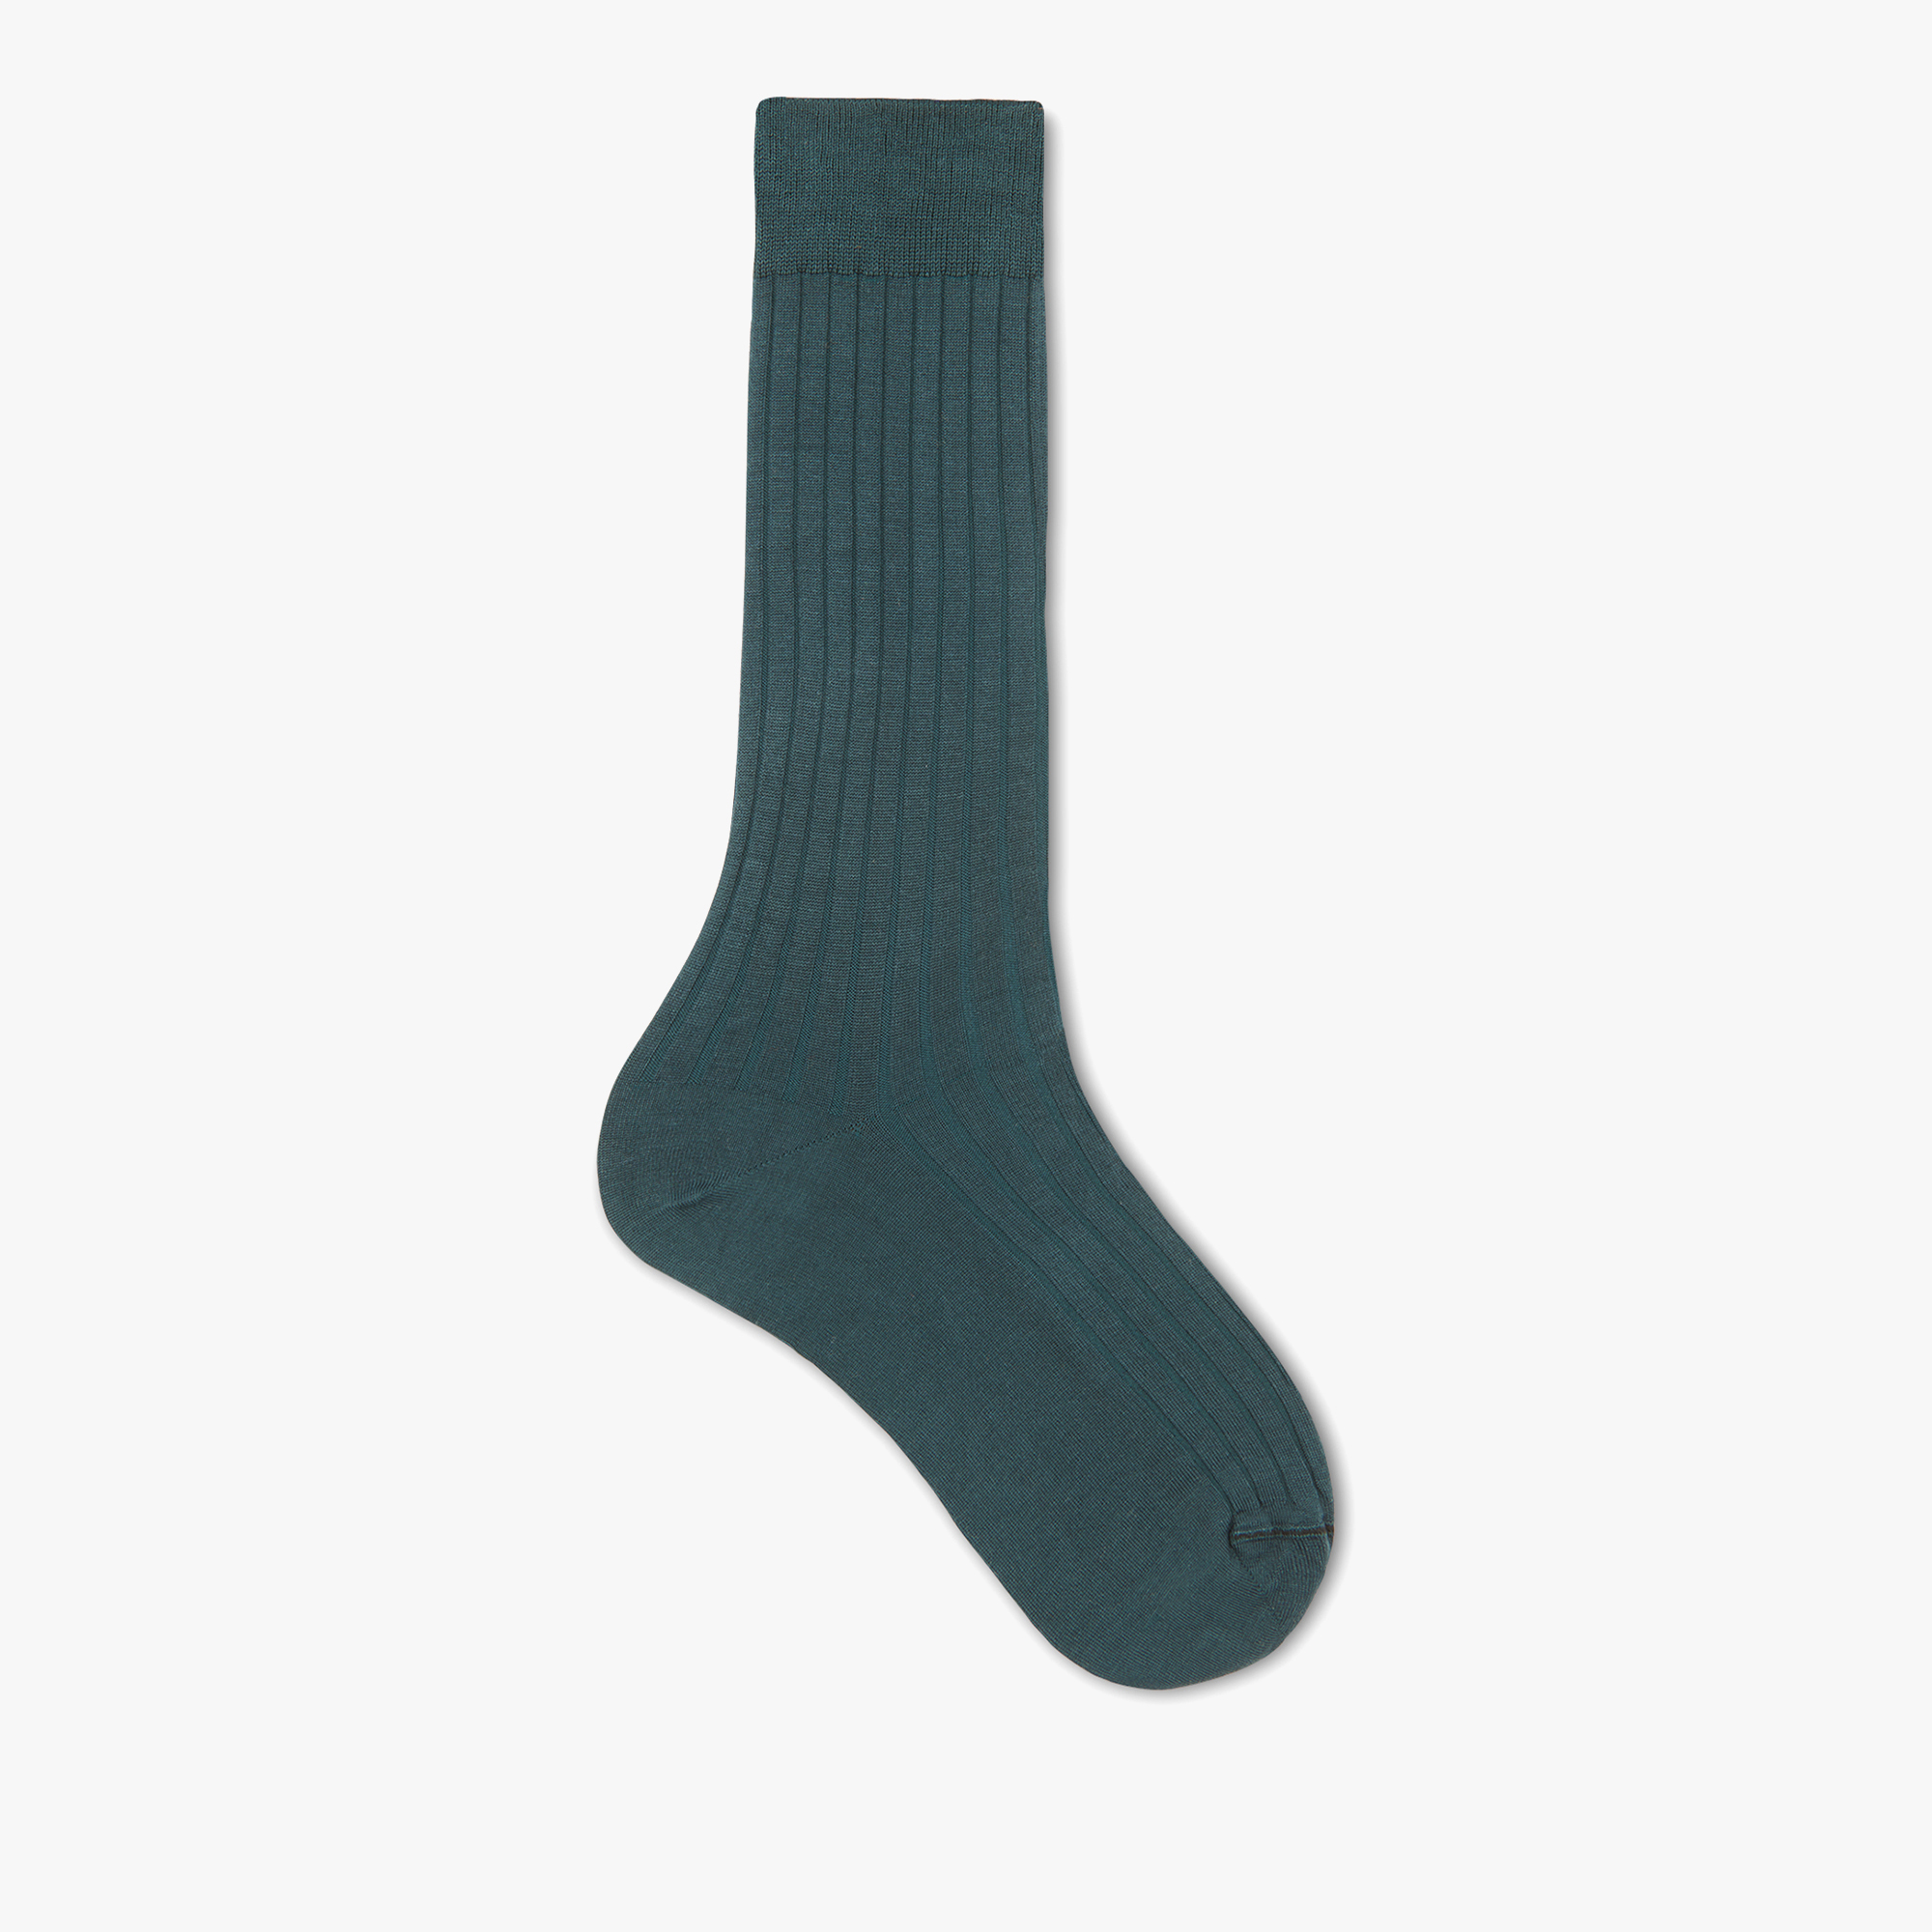 Cotton Ribbed Socks, SAND BEIGE, hi-res